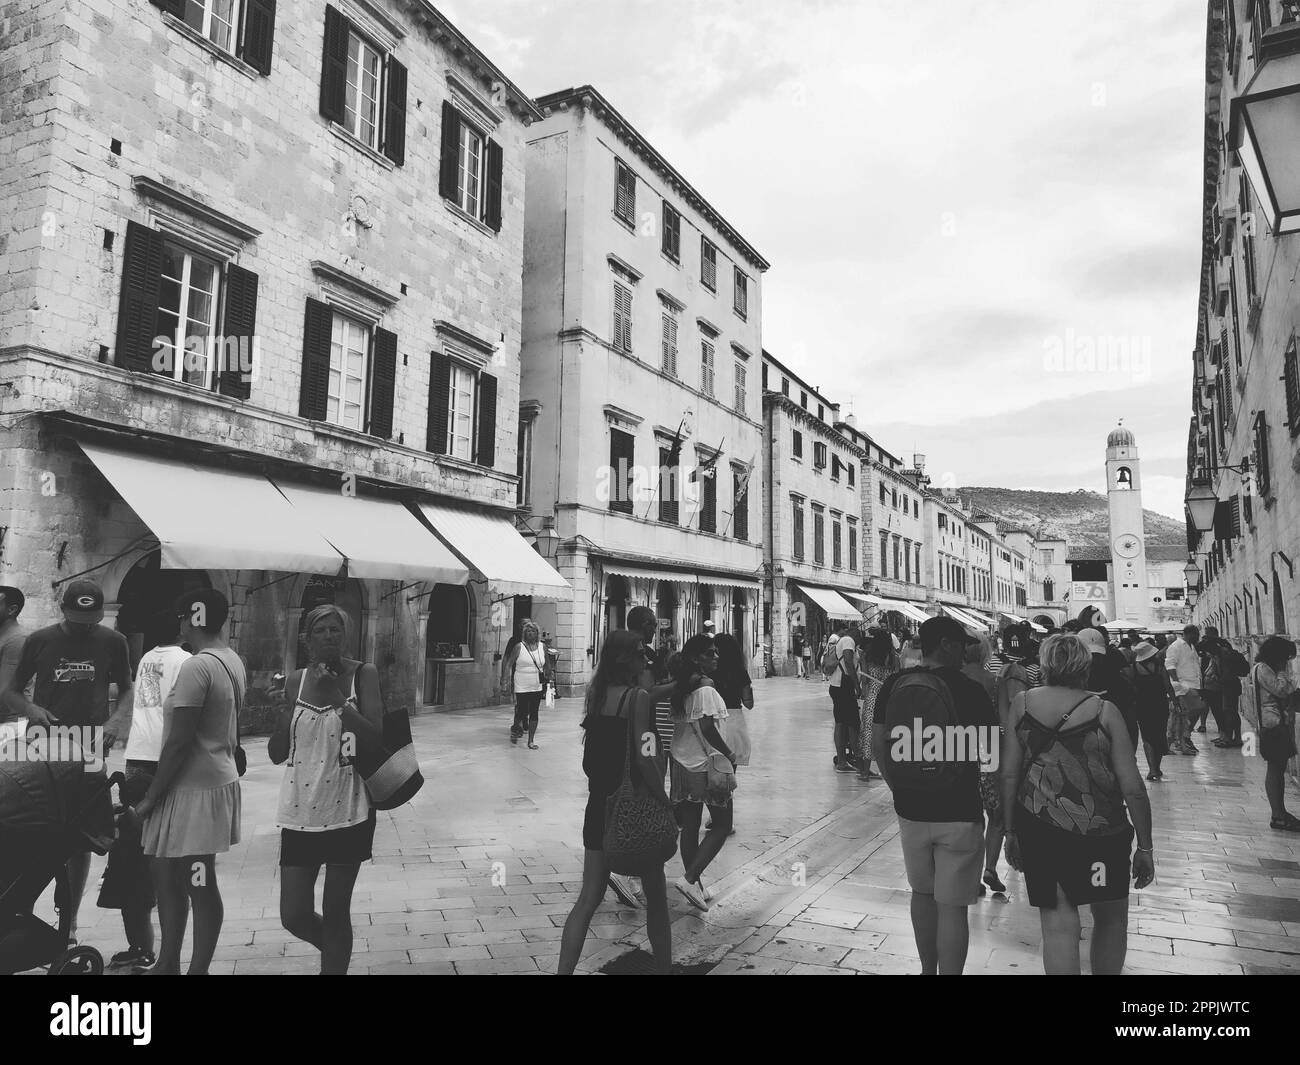 Stradun, Stradone est la rue principale du centre-ville historique de Dubrovnik en Croatie. sites architecturaux. Un endroit populaire pour les promenades touristiques. Les gens marchent le 14 août 2022 Noir et blanc Banque D'Images